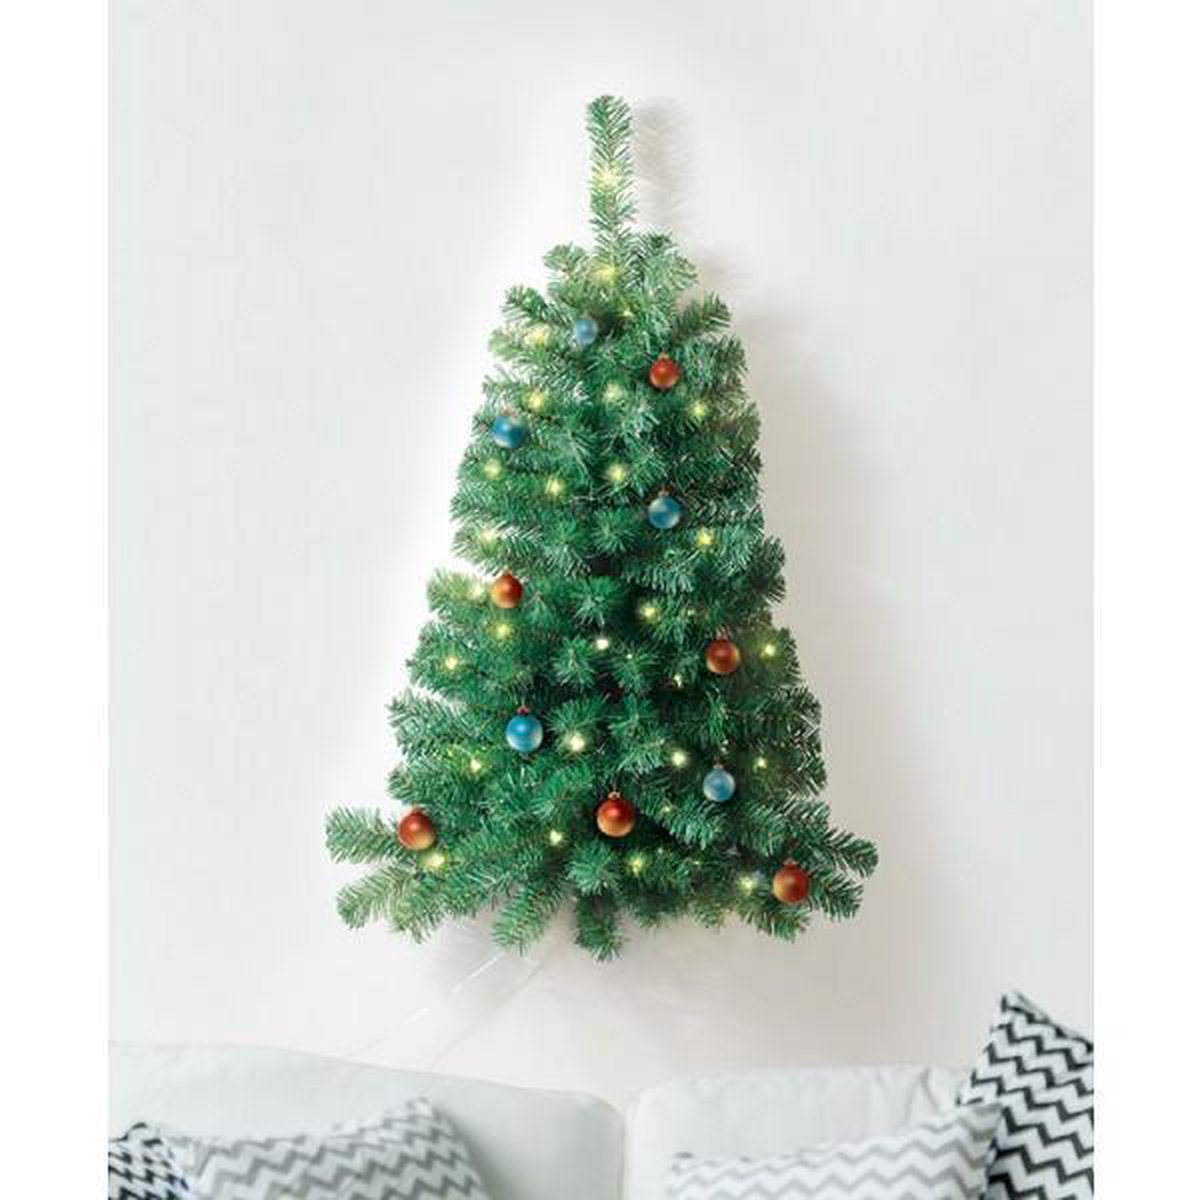 Ideaworks Halve Muur Kerstboom met verlichting | bol.com